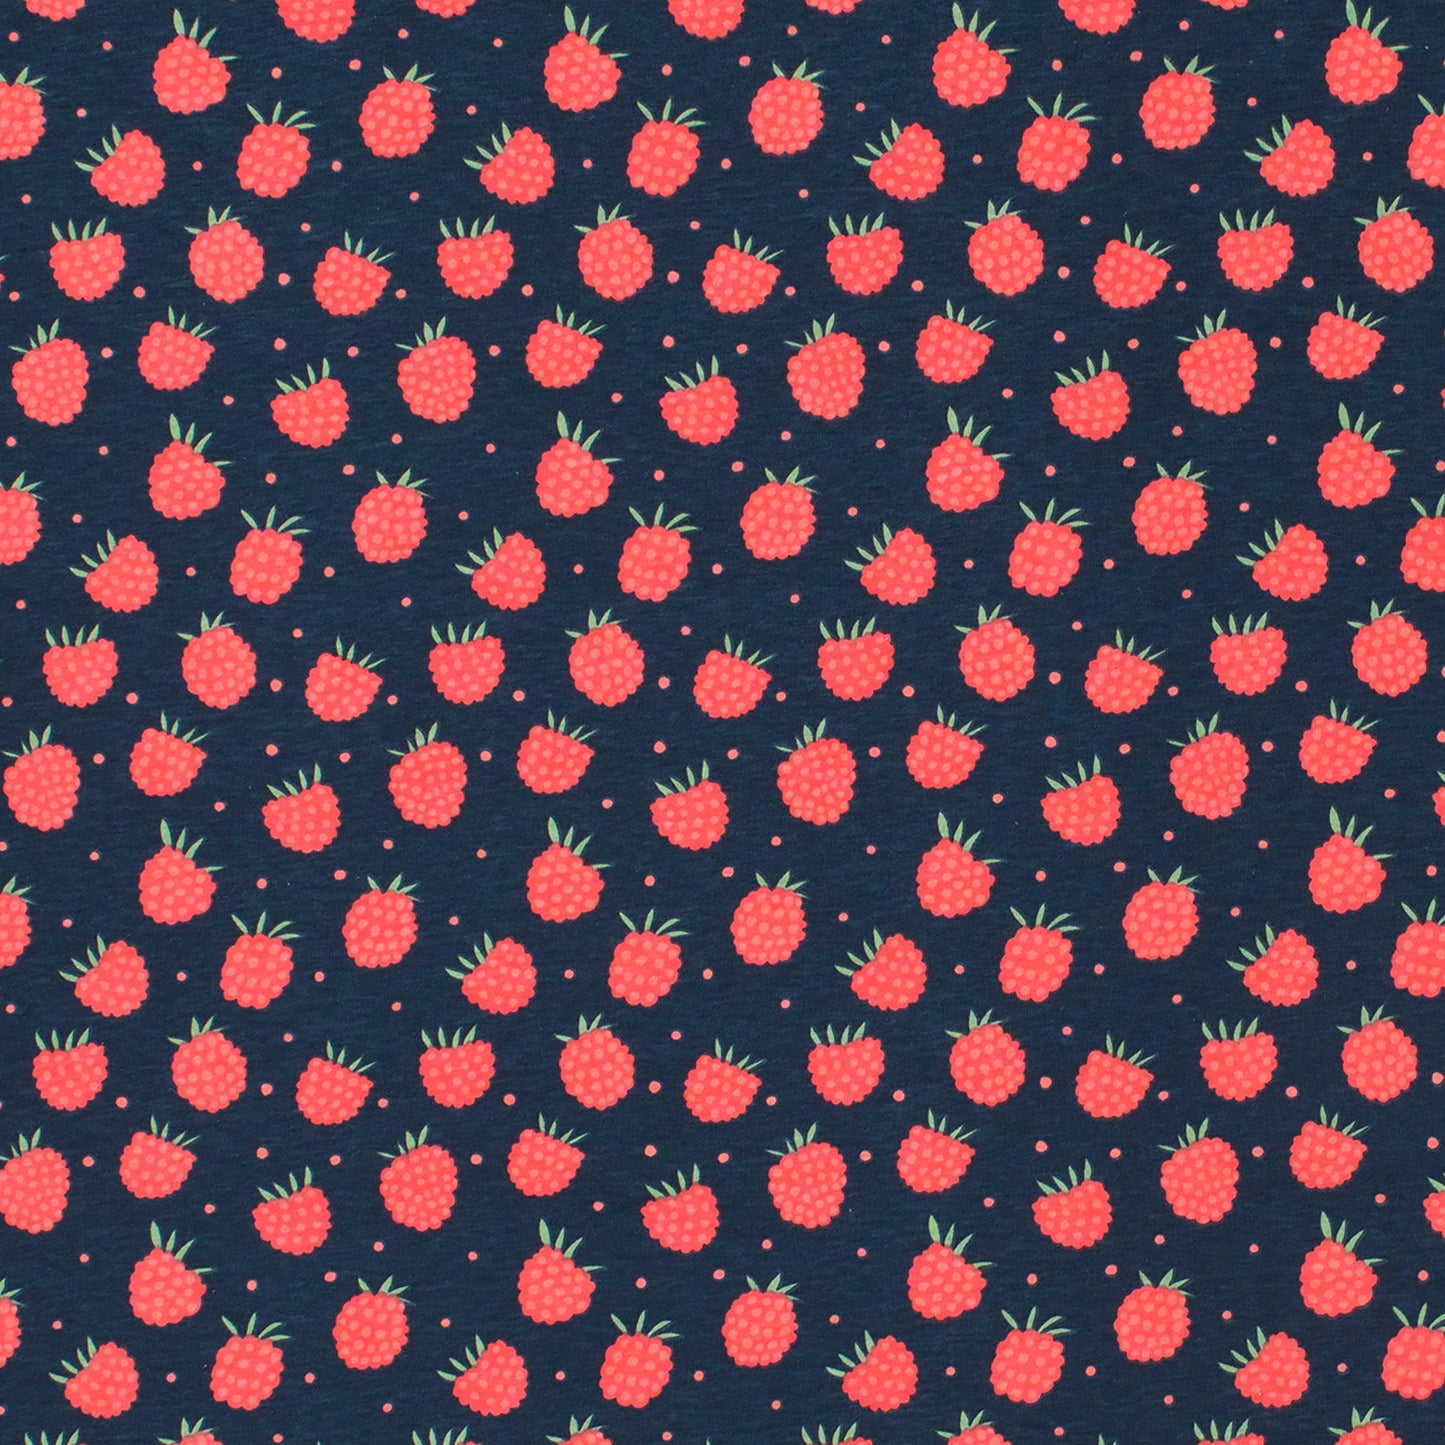 Short-Sleeve Snapsuit - Raspberries Night Sky